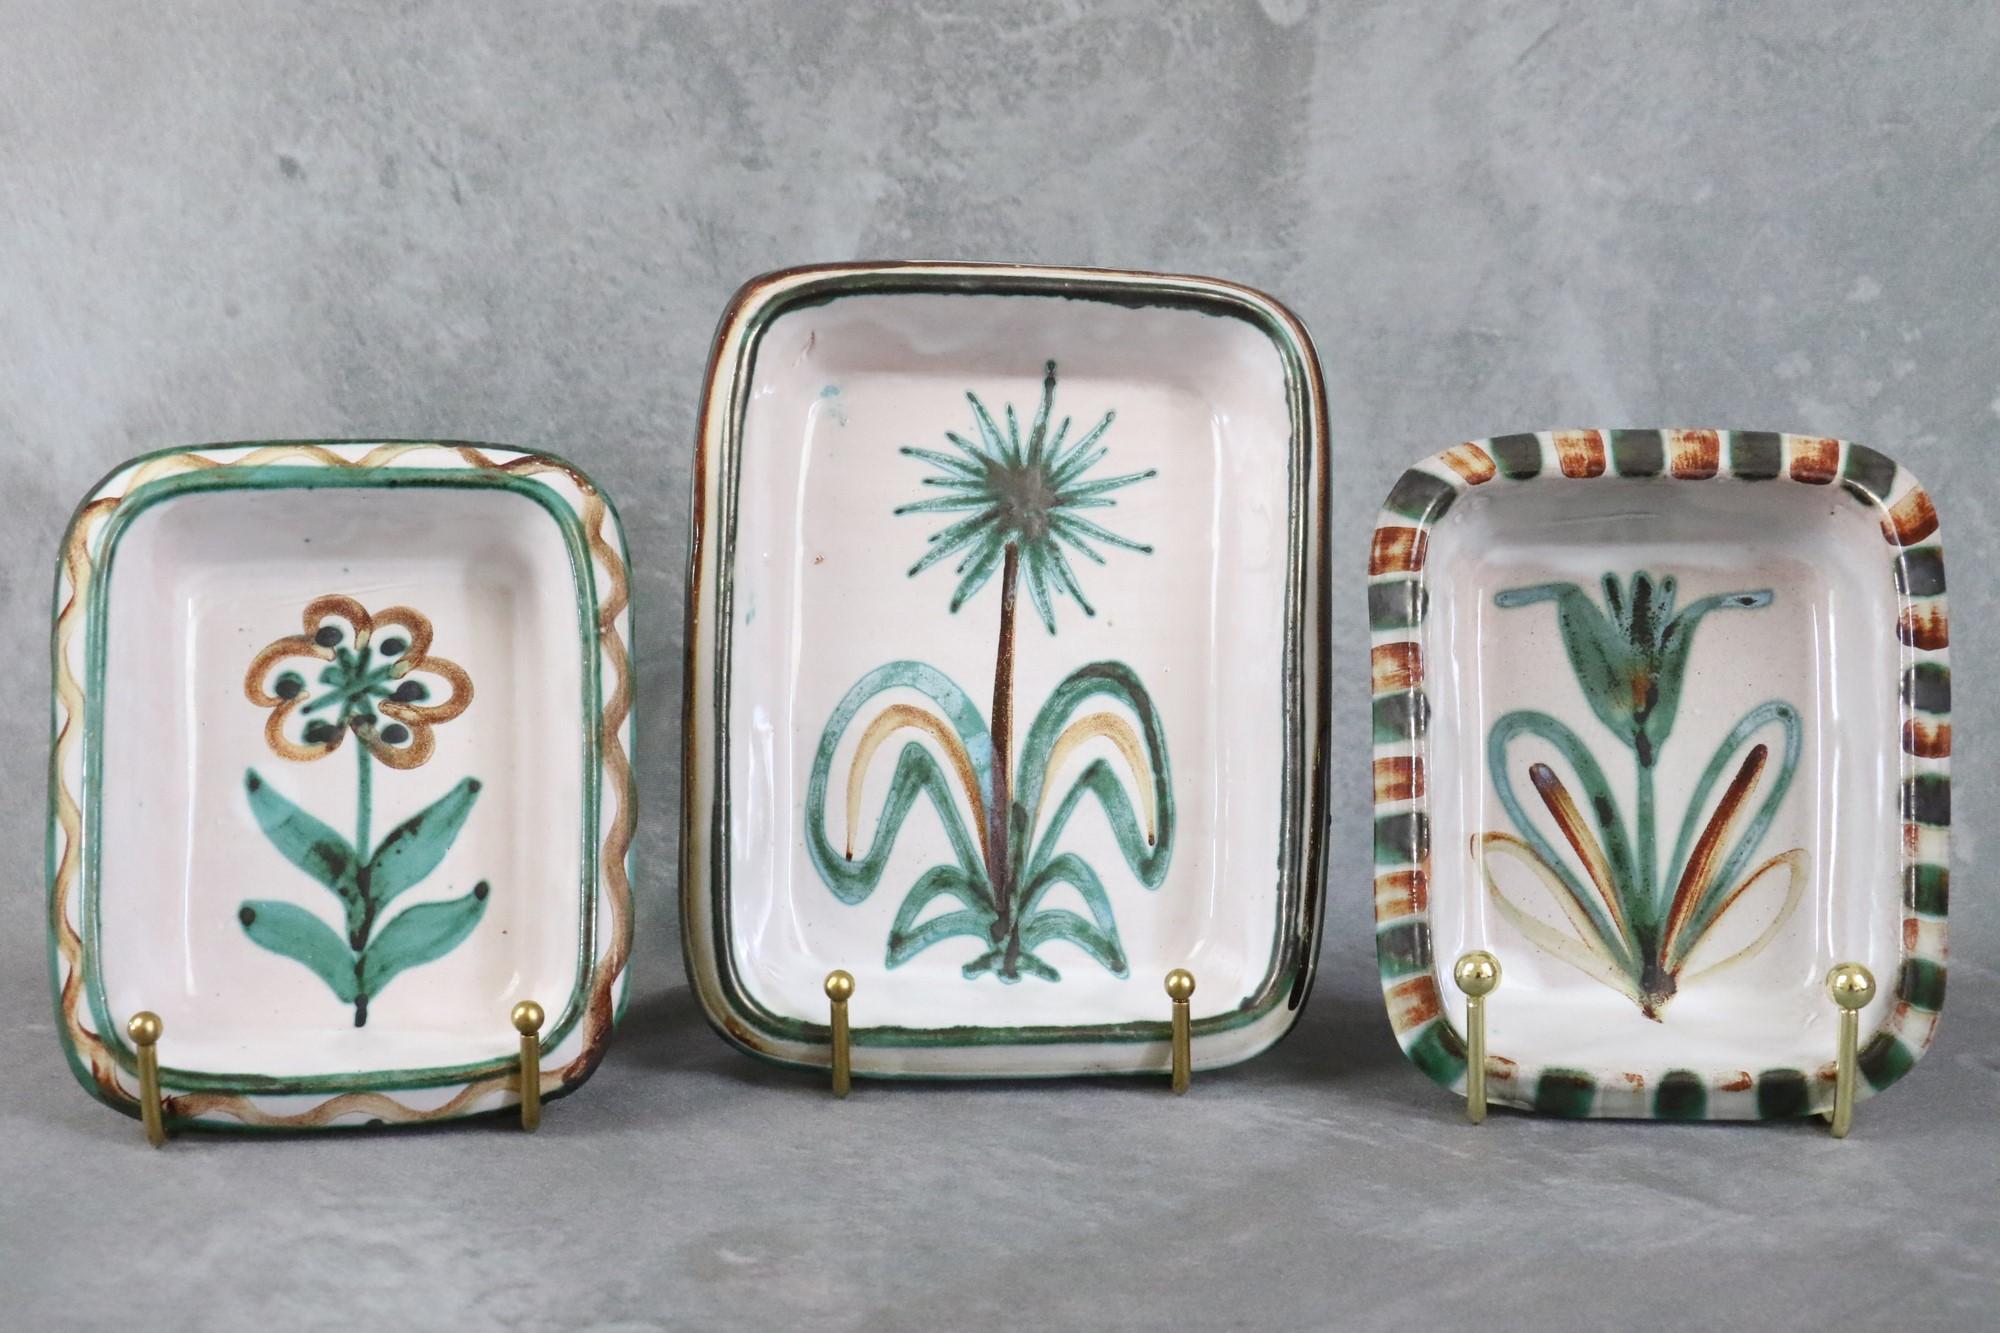 Satz von 3 Keramikschalen von Robert Picault, Vallauris, französische Keramik, 1950er Jahre

Sie werden von Hand gefertigt, sind in grünen, braunen und weißen Farben emailliert und mit geometrischen Mustern und Blumen verziert. 
Sie sind in gutem